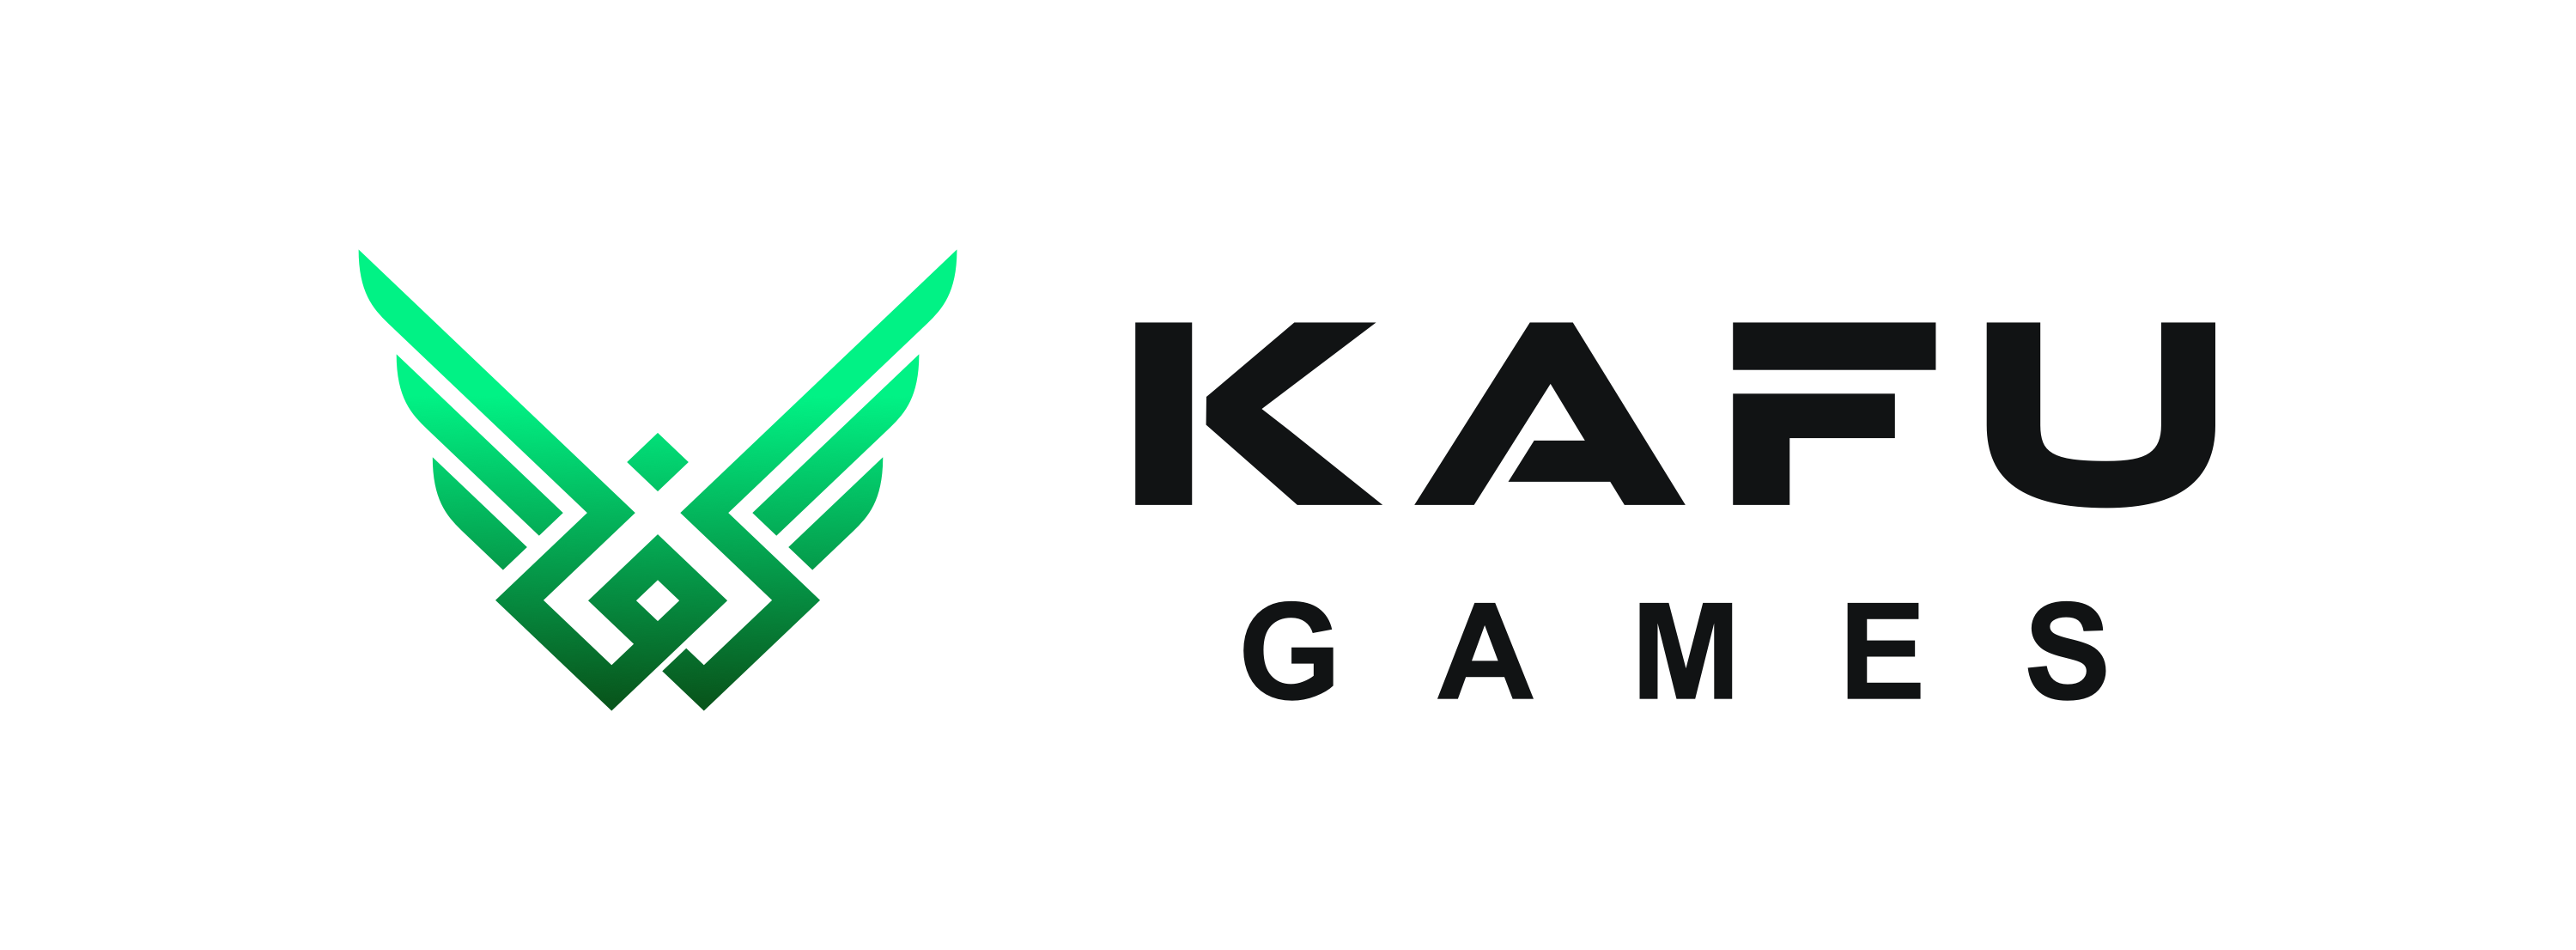 Kafu Games